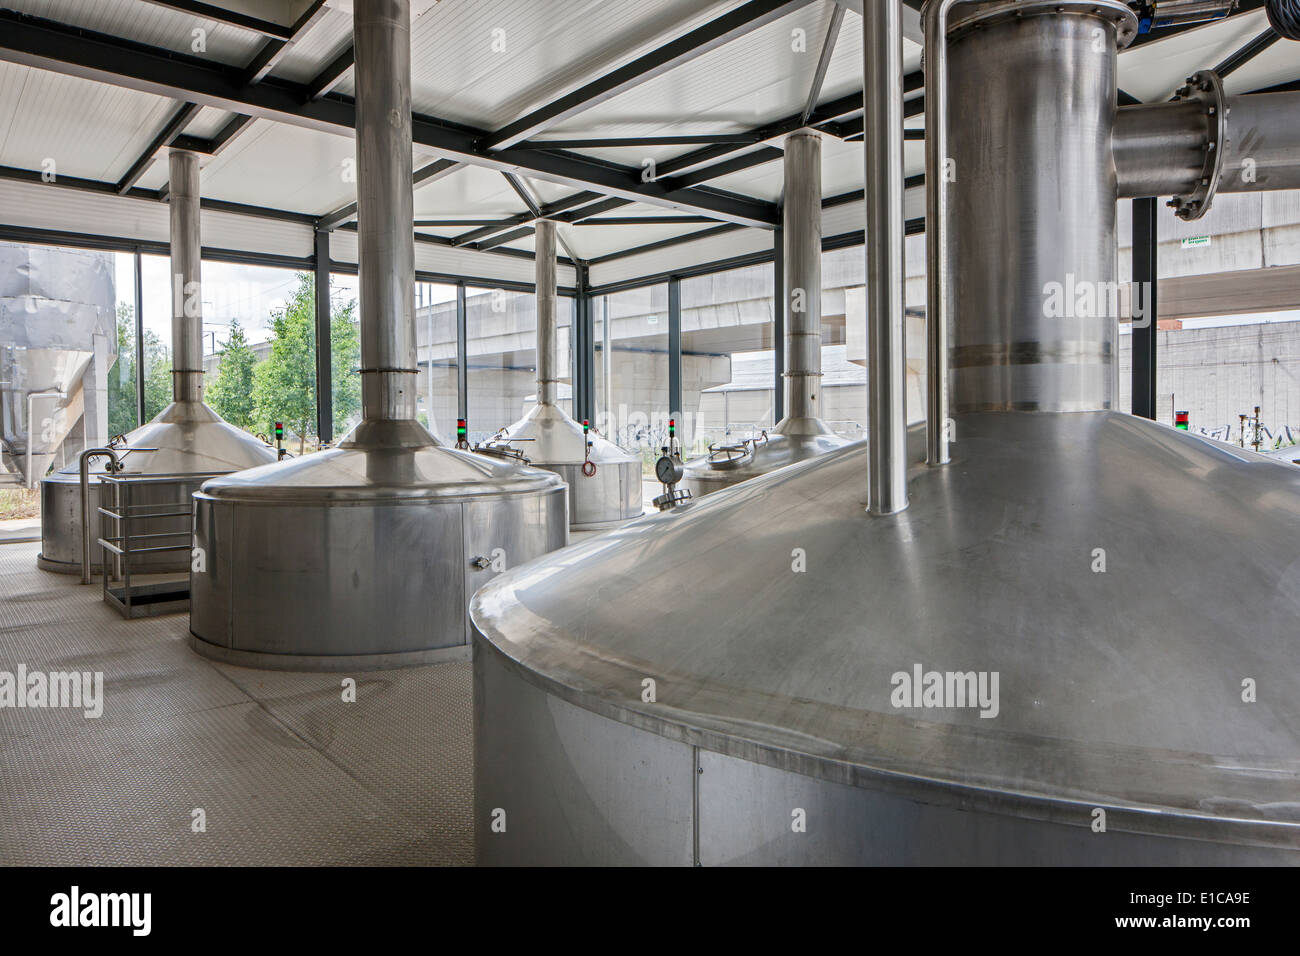 Wasserkocher bei Brouwerij Boon, belgische Brauerei in Lembeek in der Nähe von Brüssel, Produzent von Geuze und Kriek Bier zu brauen Stockfoto